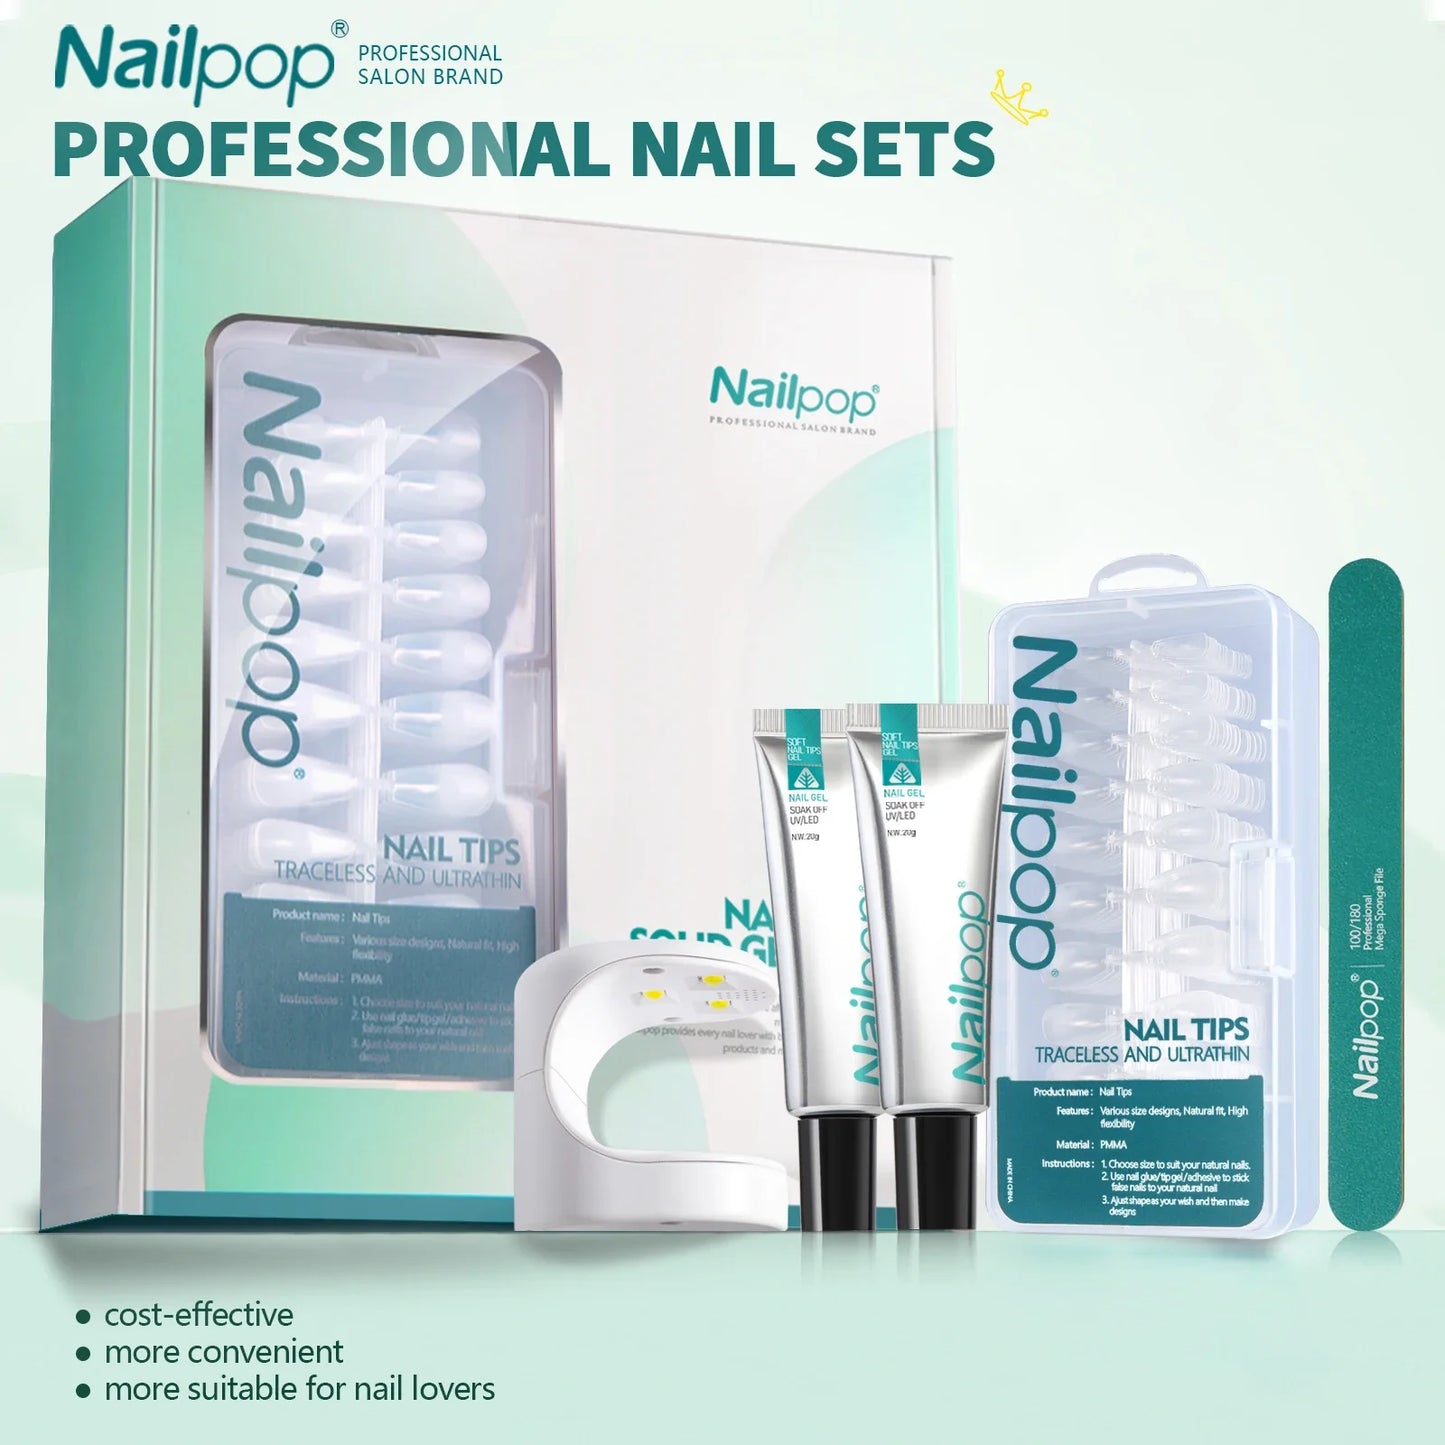 Nailpop Nail Tips and Glue Gel Nail Kit Fast Nail Extension Set with Soft Gel UV Lamp 600Pcs Semi Matte Nails and Files Tools